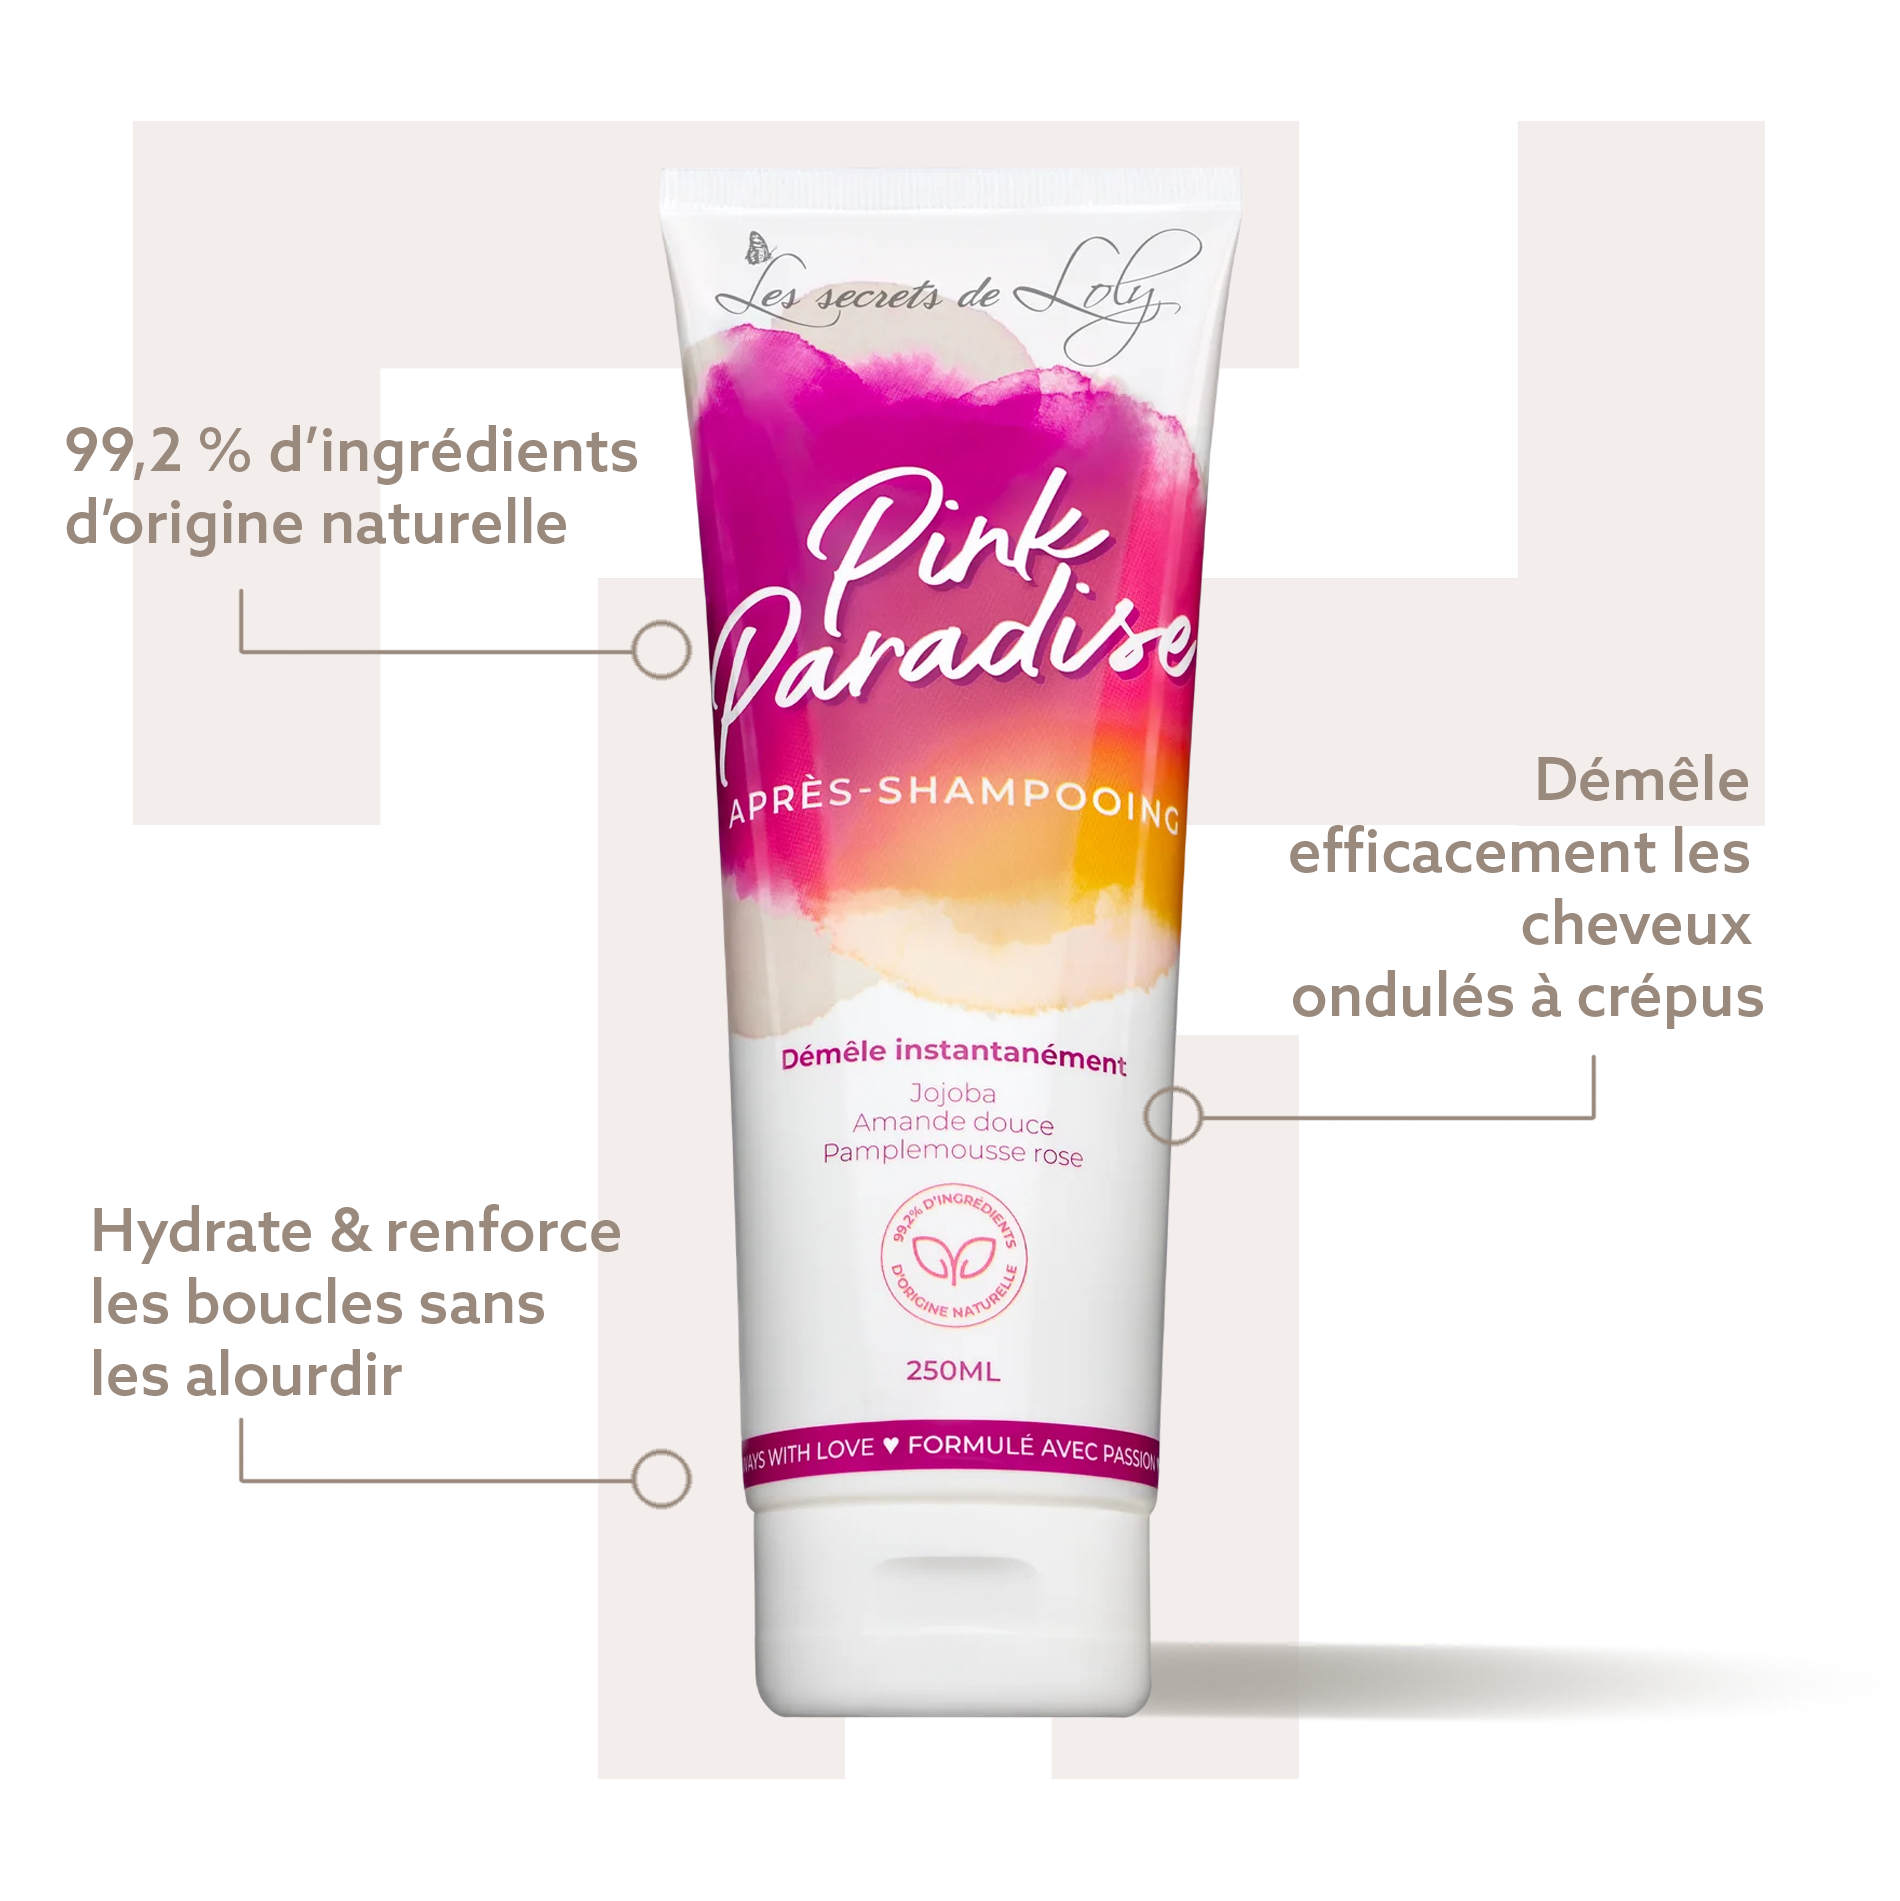 Pink Paradise - Les Secrets de Loly - Bienfaits - Après-shampoings - Tuccinardi